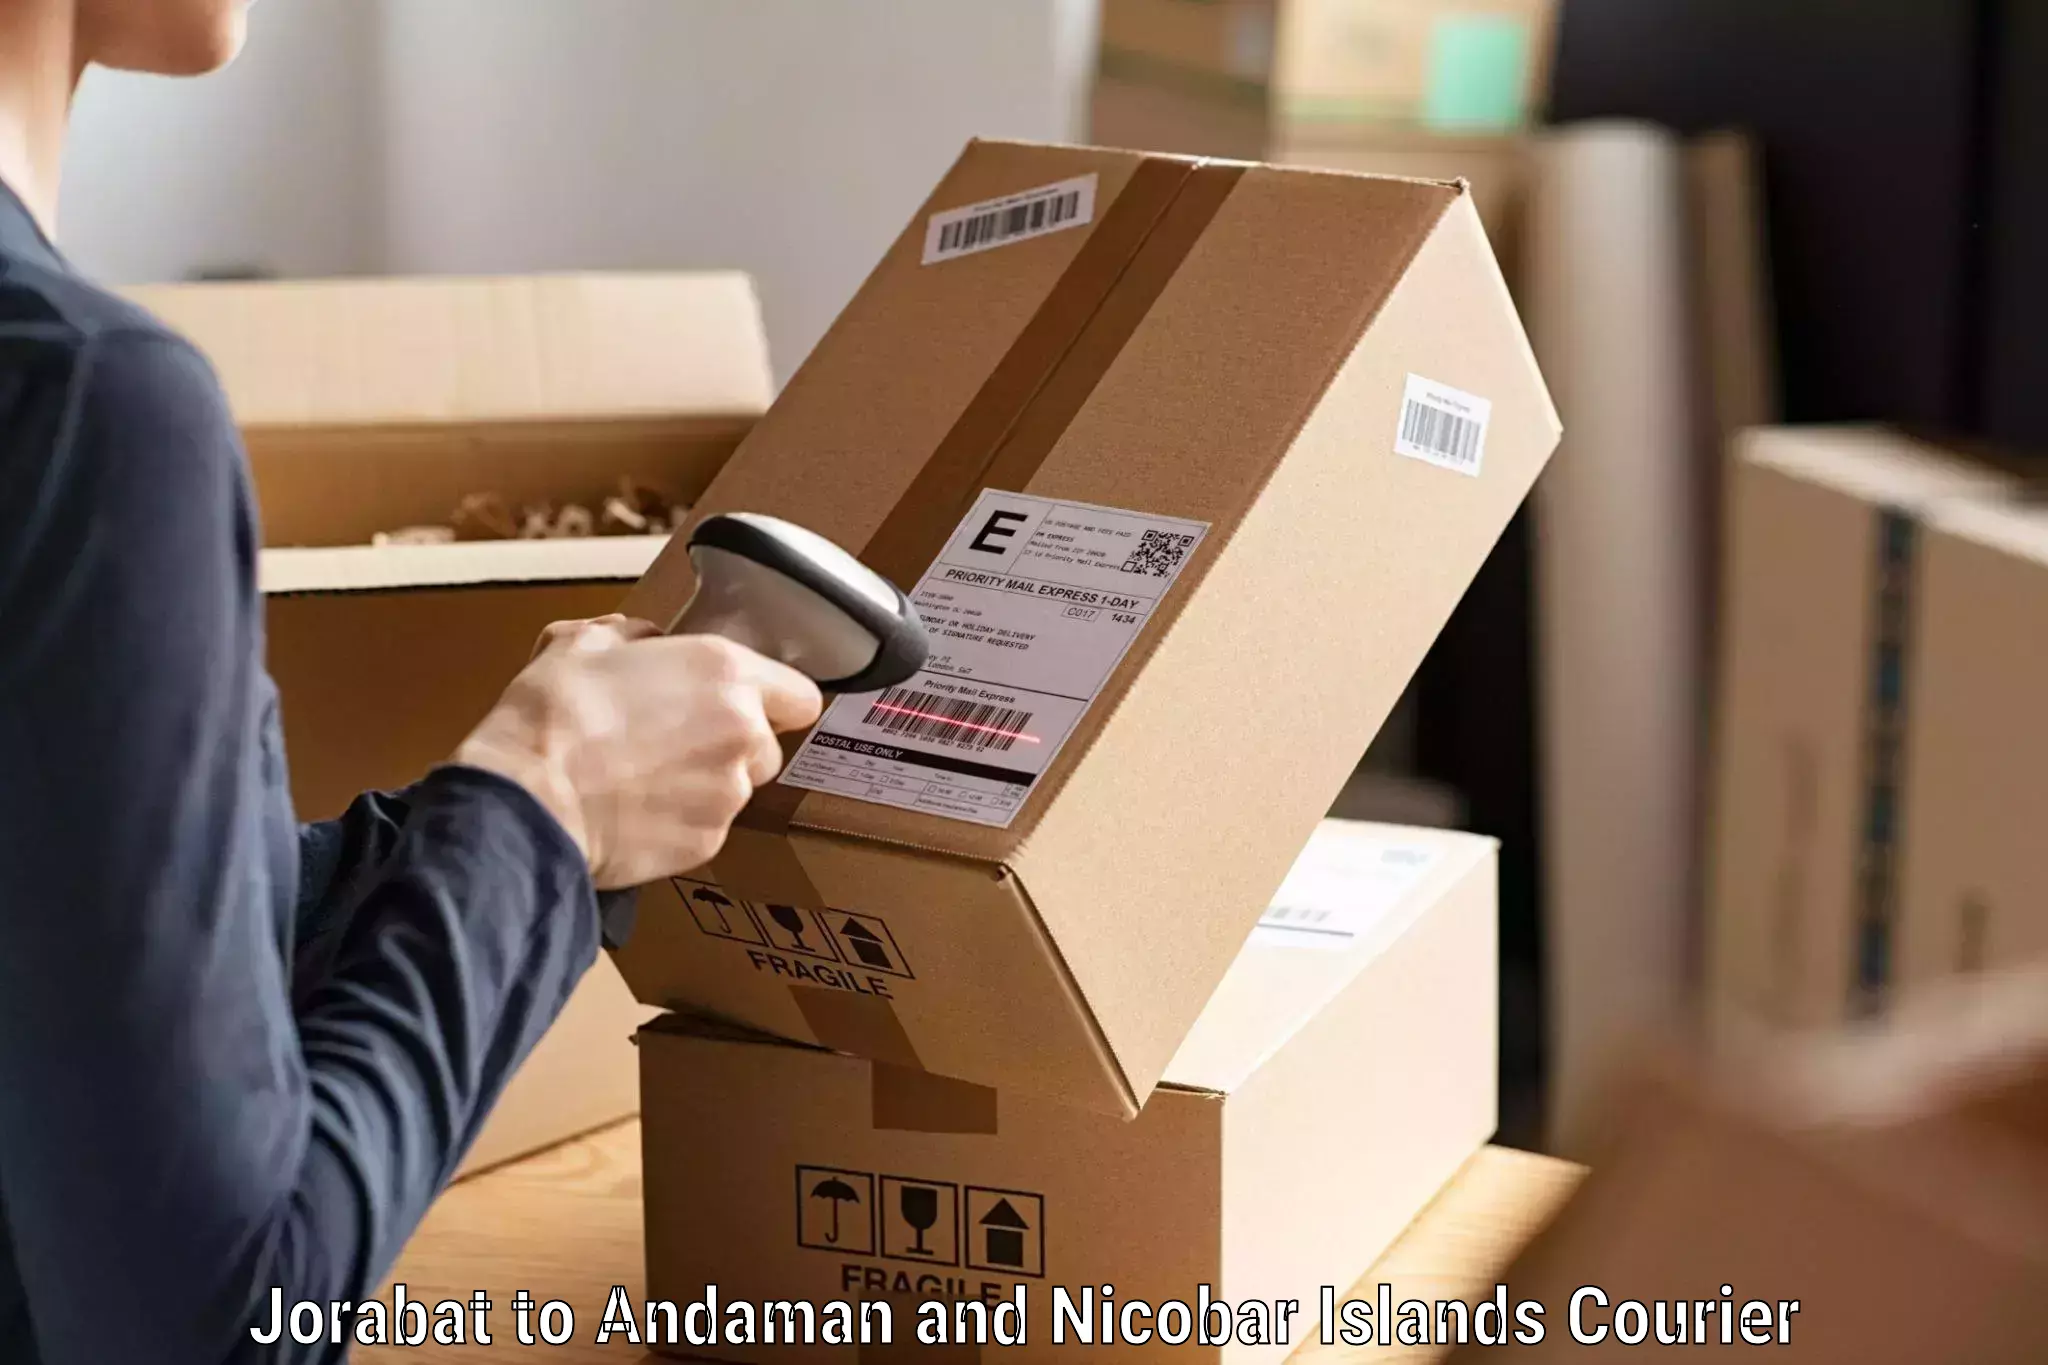 Regular parcel service Jorabat to Andaman and Nicobar Islands